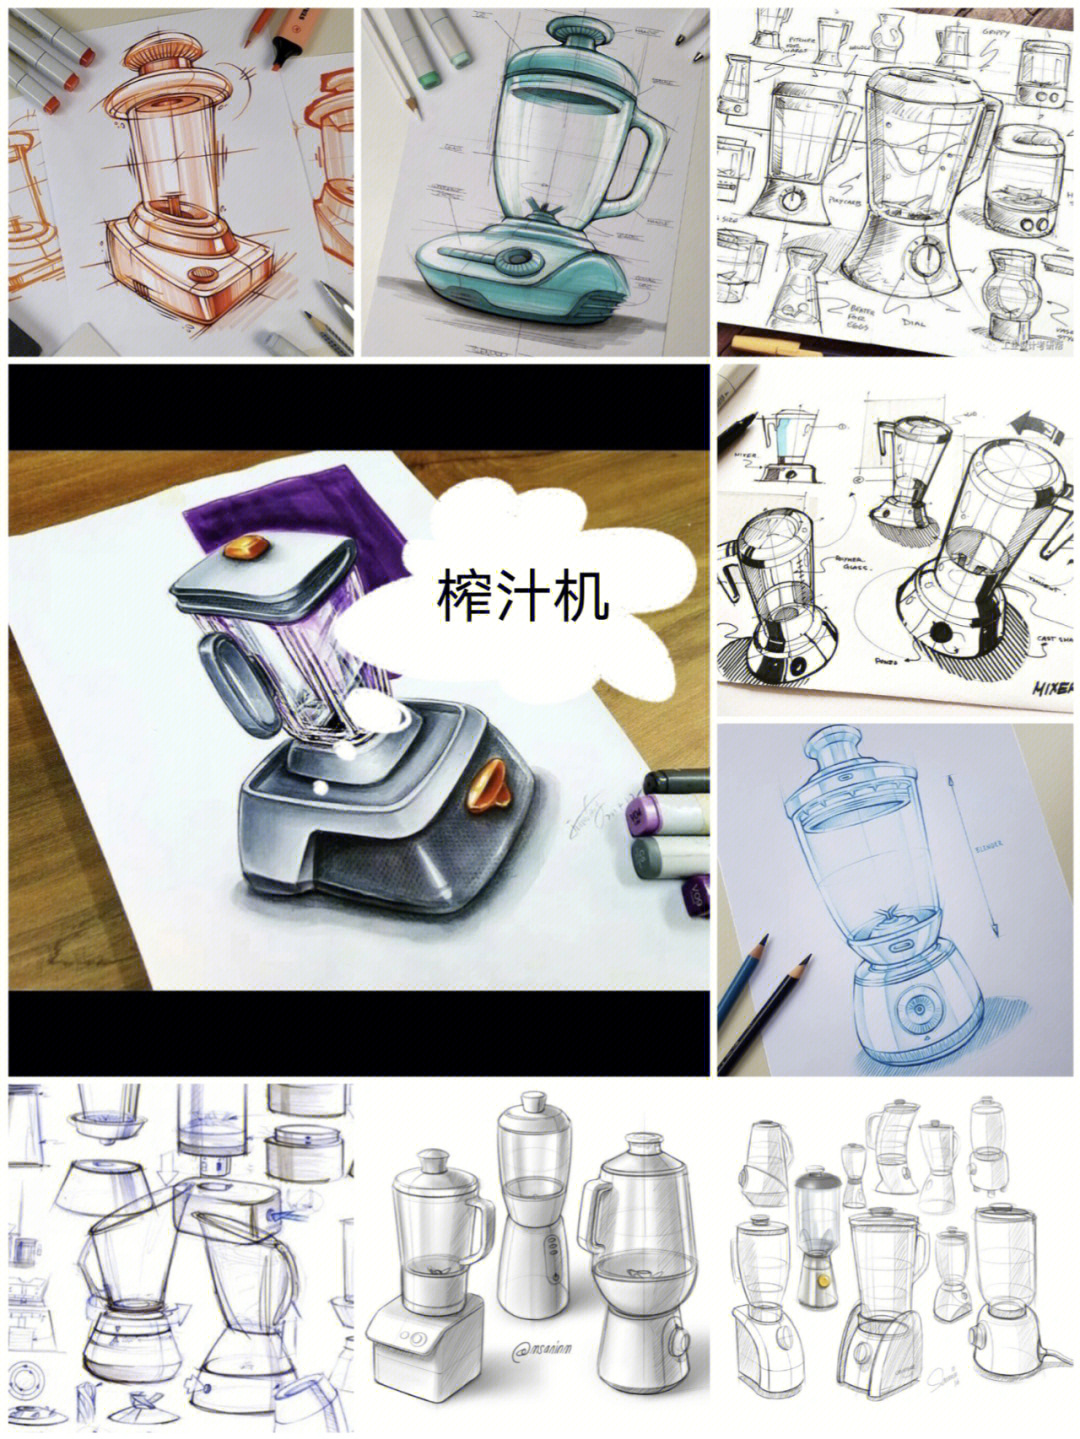 榨汁机手绘效果图图片